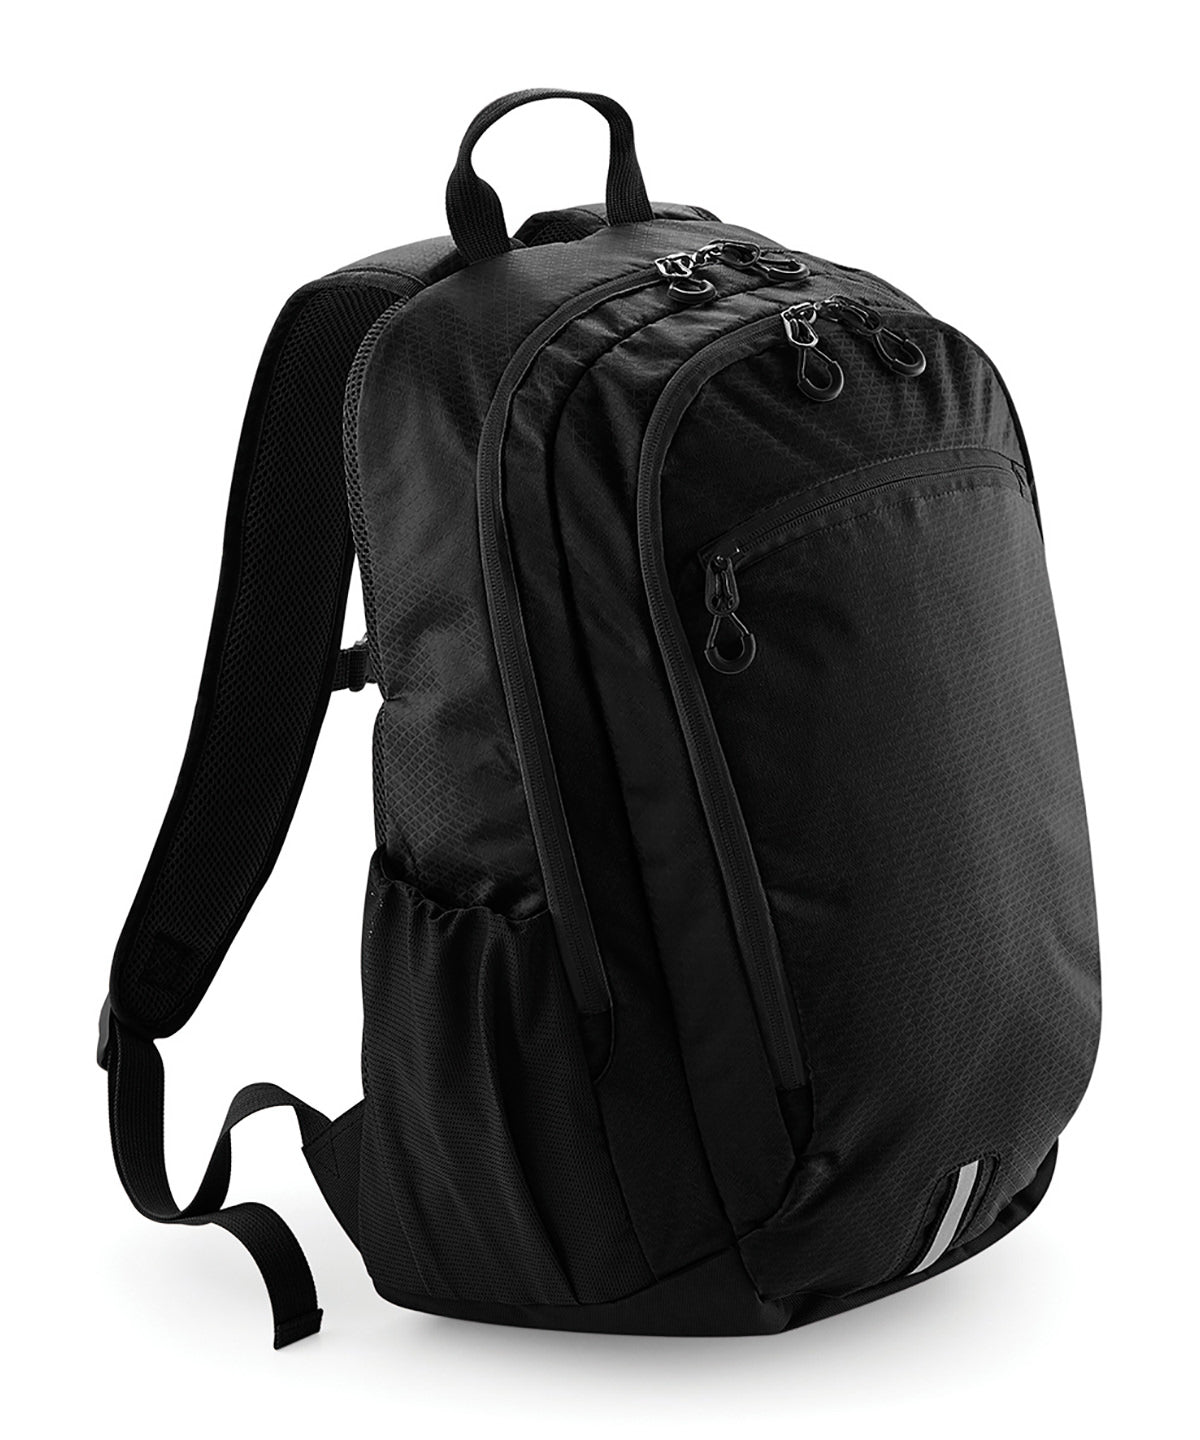 Töskur - Endeavour Backpack